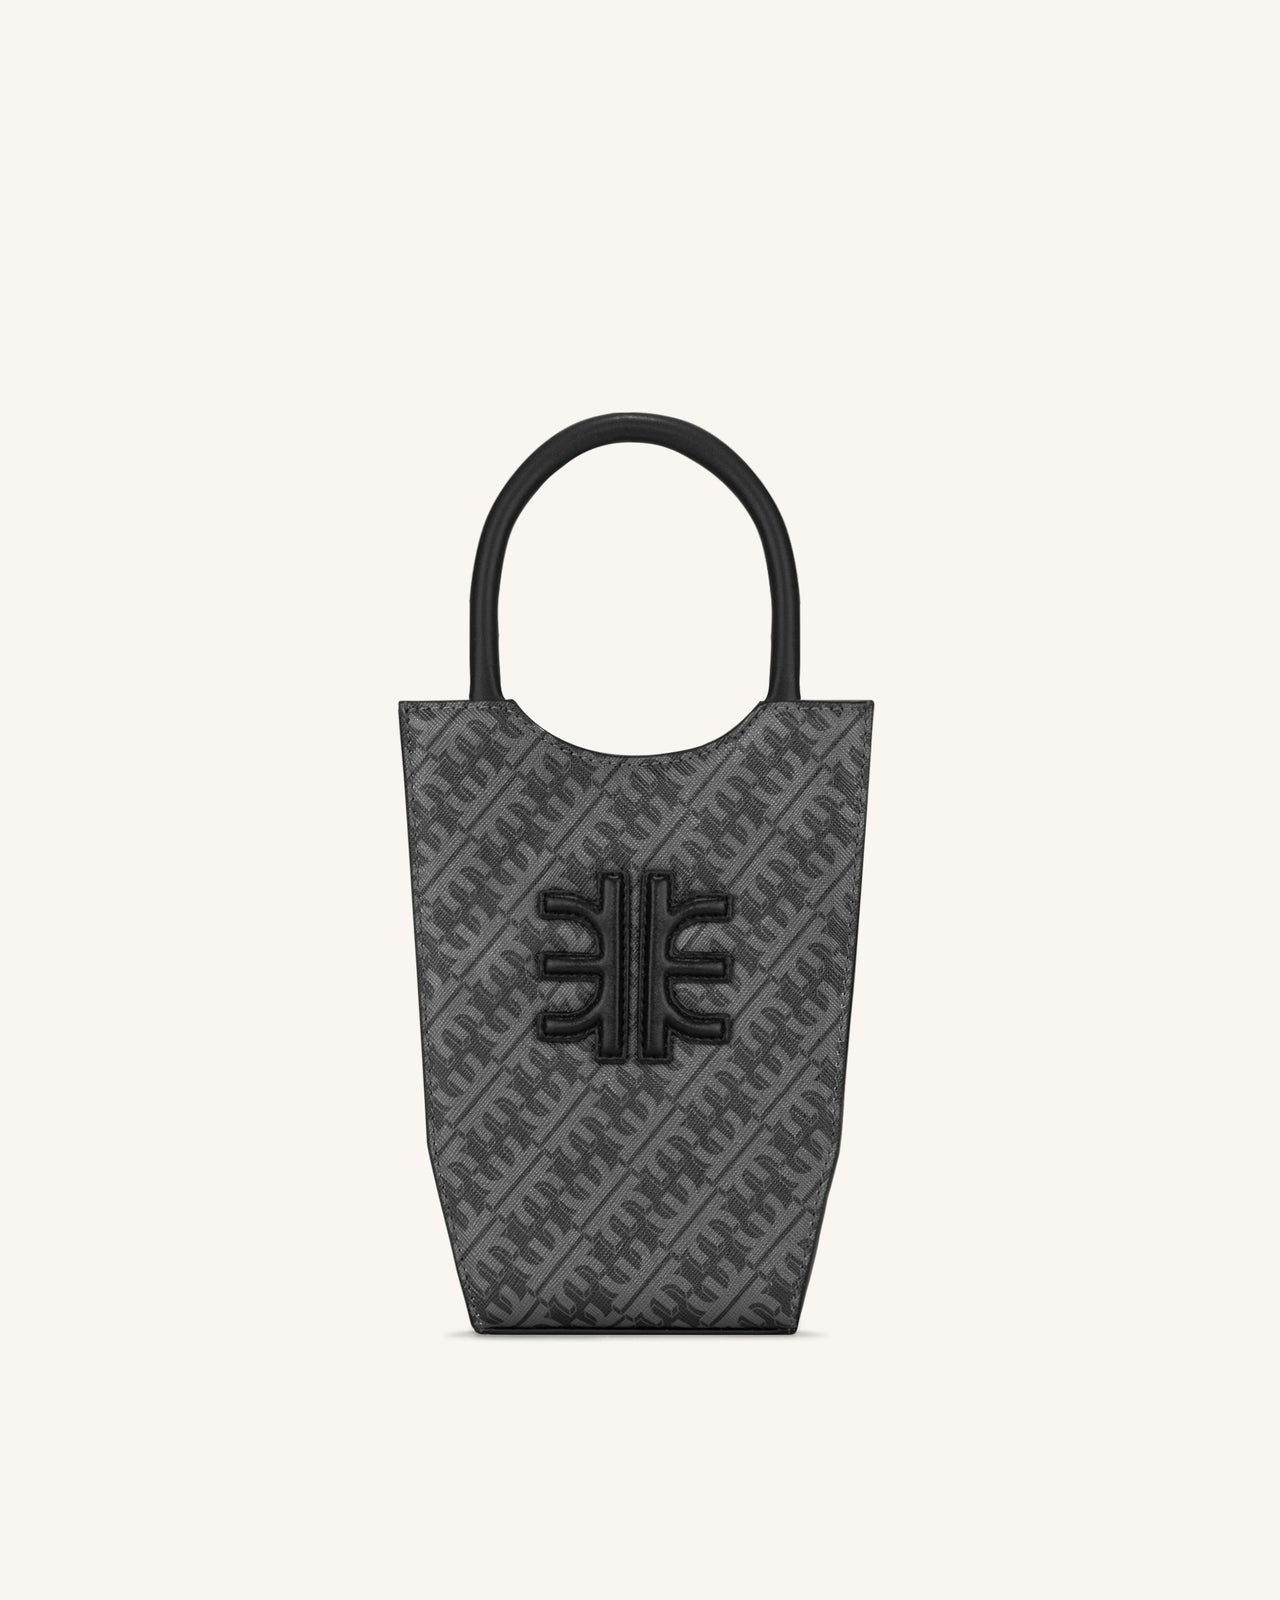 FEI Phone Bag - Iron Black